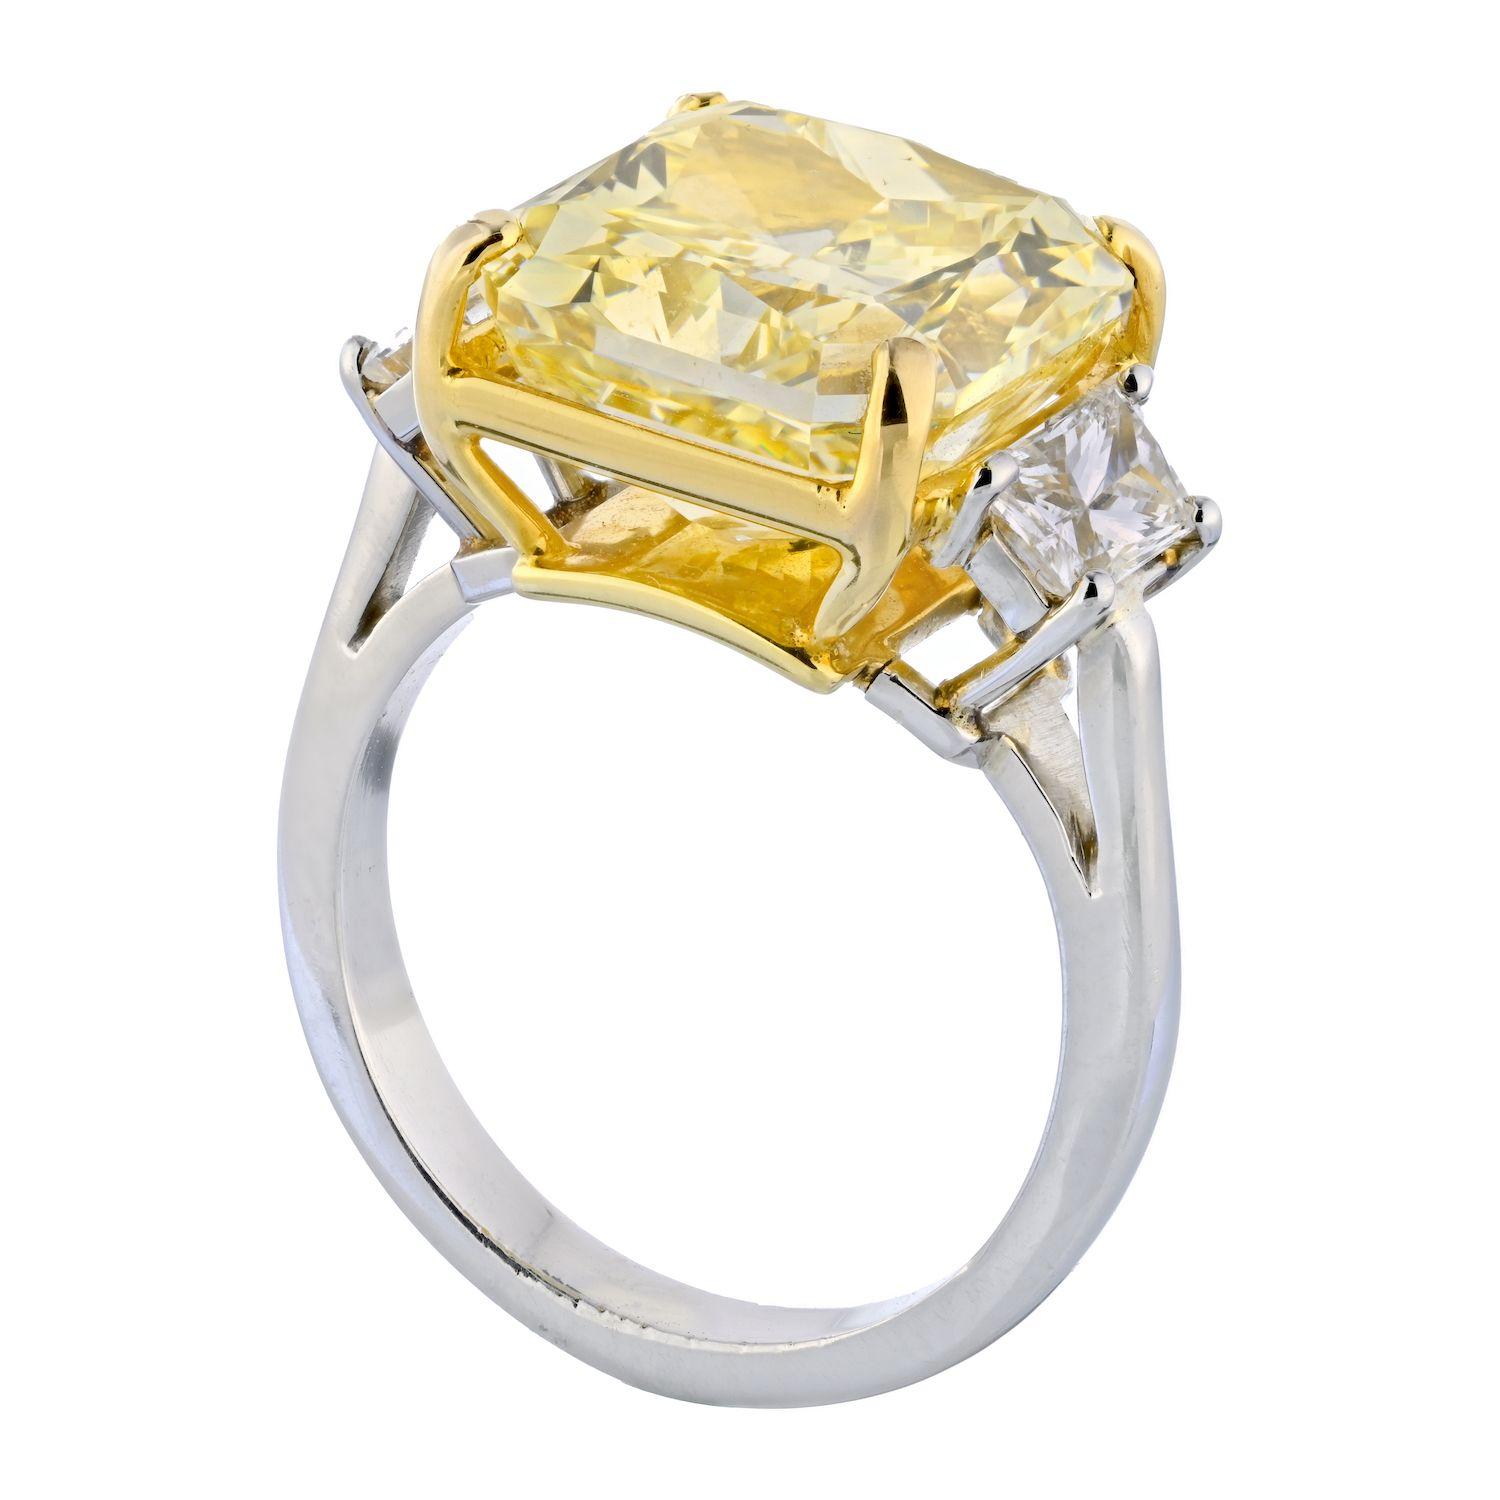 Il s'agit d'une superbe bague de fiançailles à trois pierres en platine et en or jaune 18 carats, ornée d'un imposant diamant de taille radiant de 10,02 qui est plus que spectaculaire. Soyez assuré que tout le monde vous remarquera, ainsi que votre